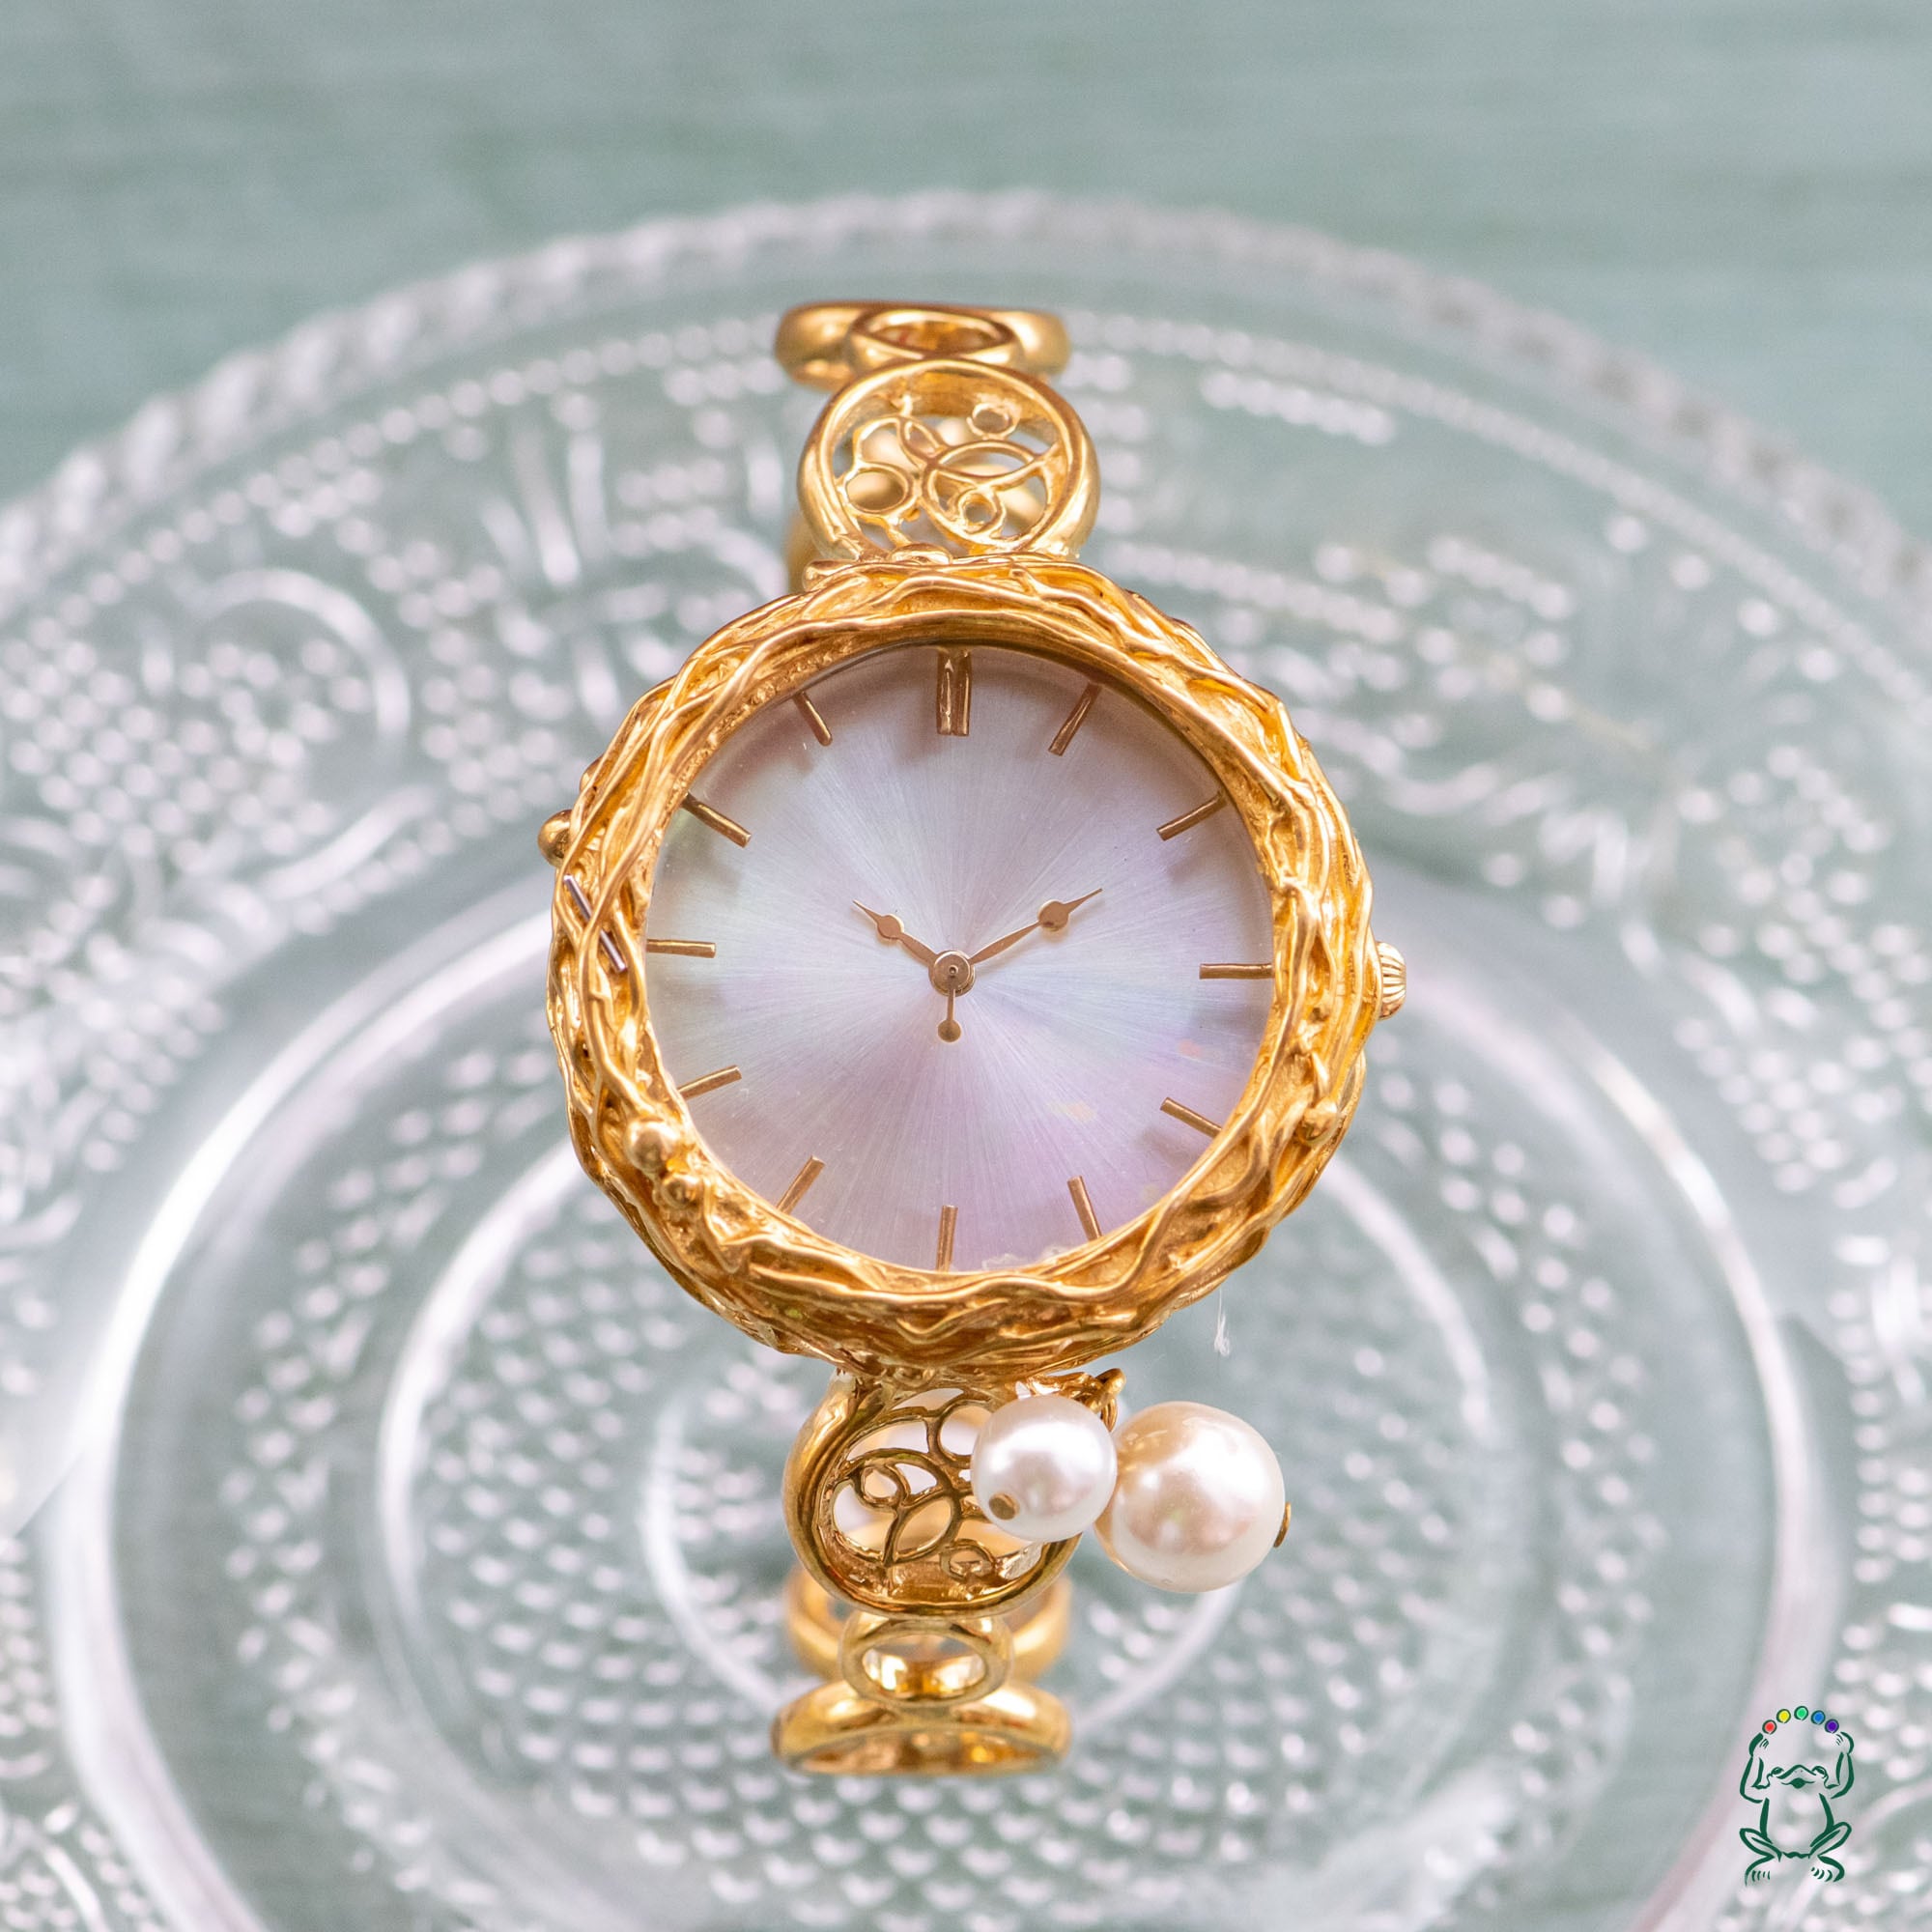 時計職人が作ったブレスレットのような華奢腕時計 - 時計